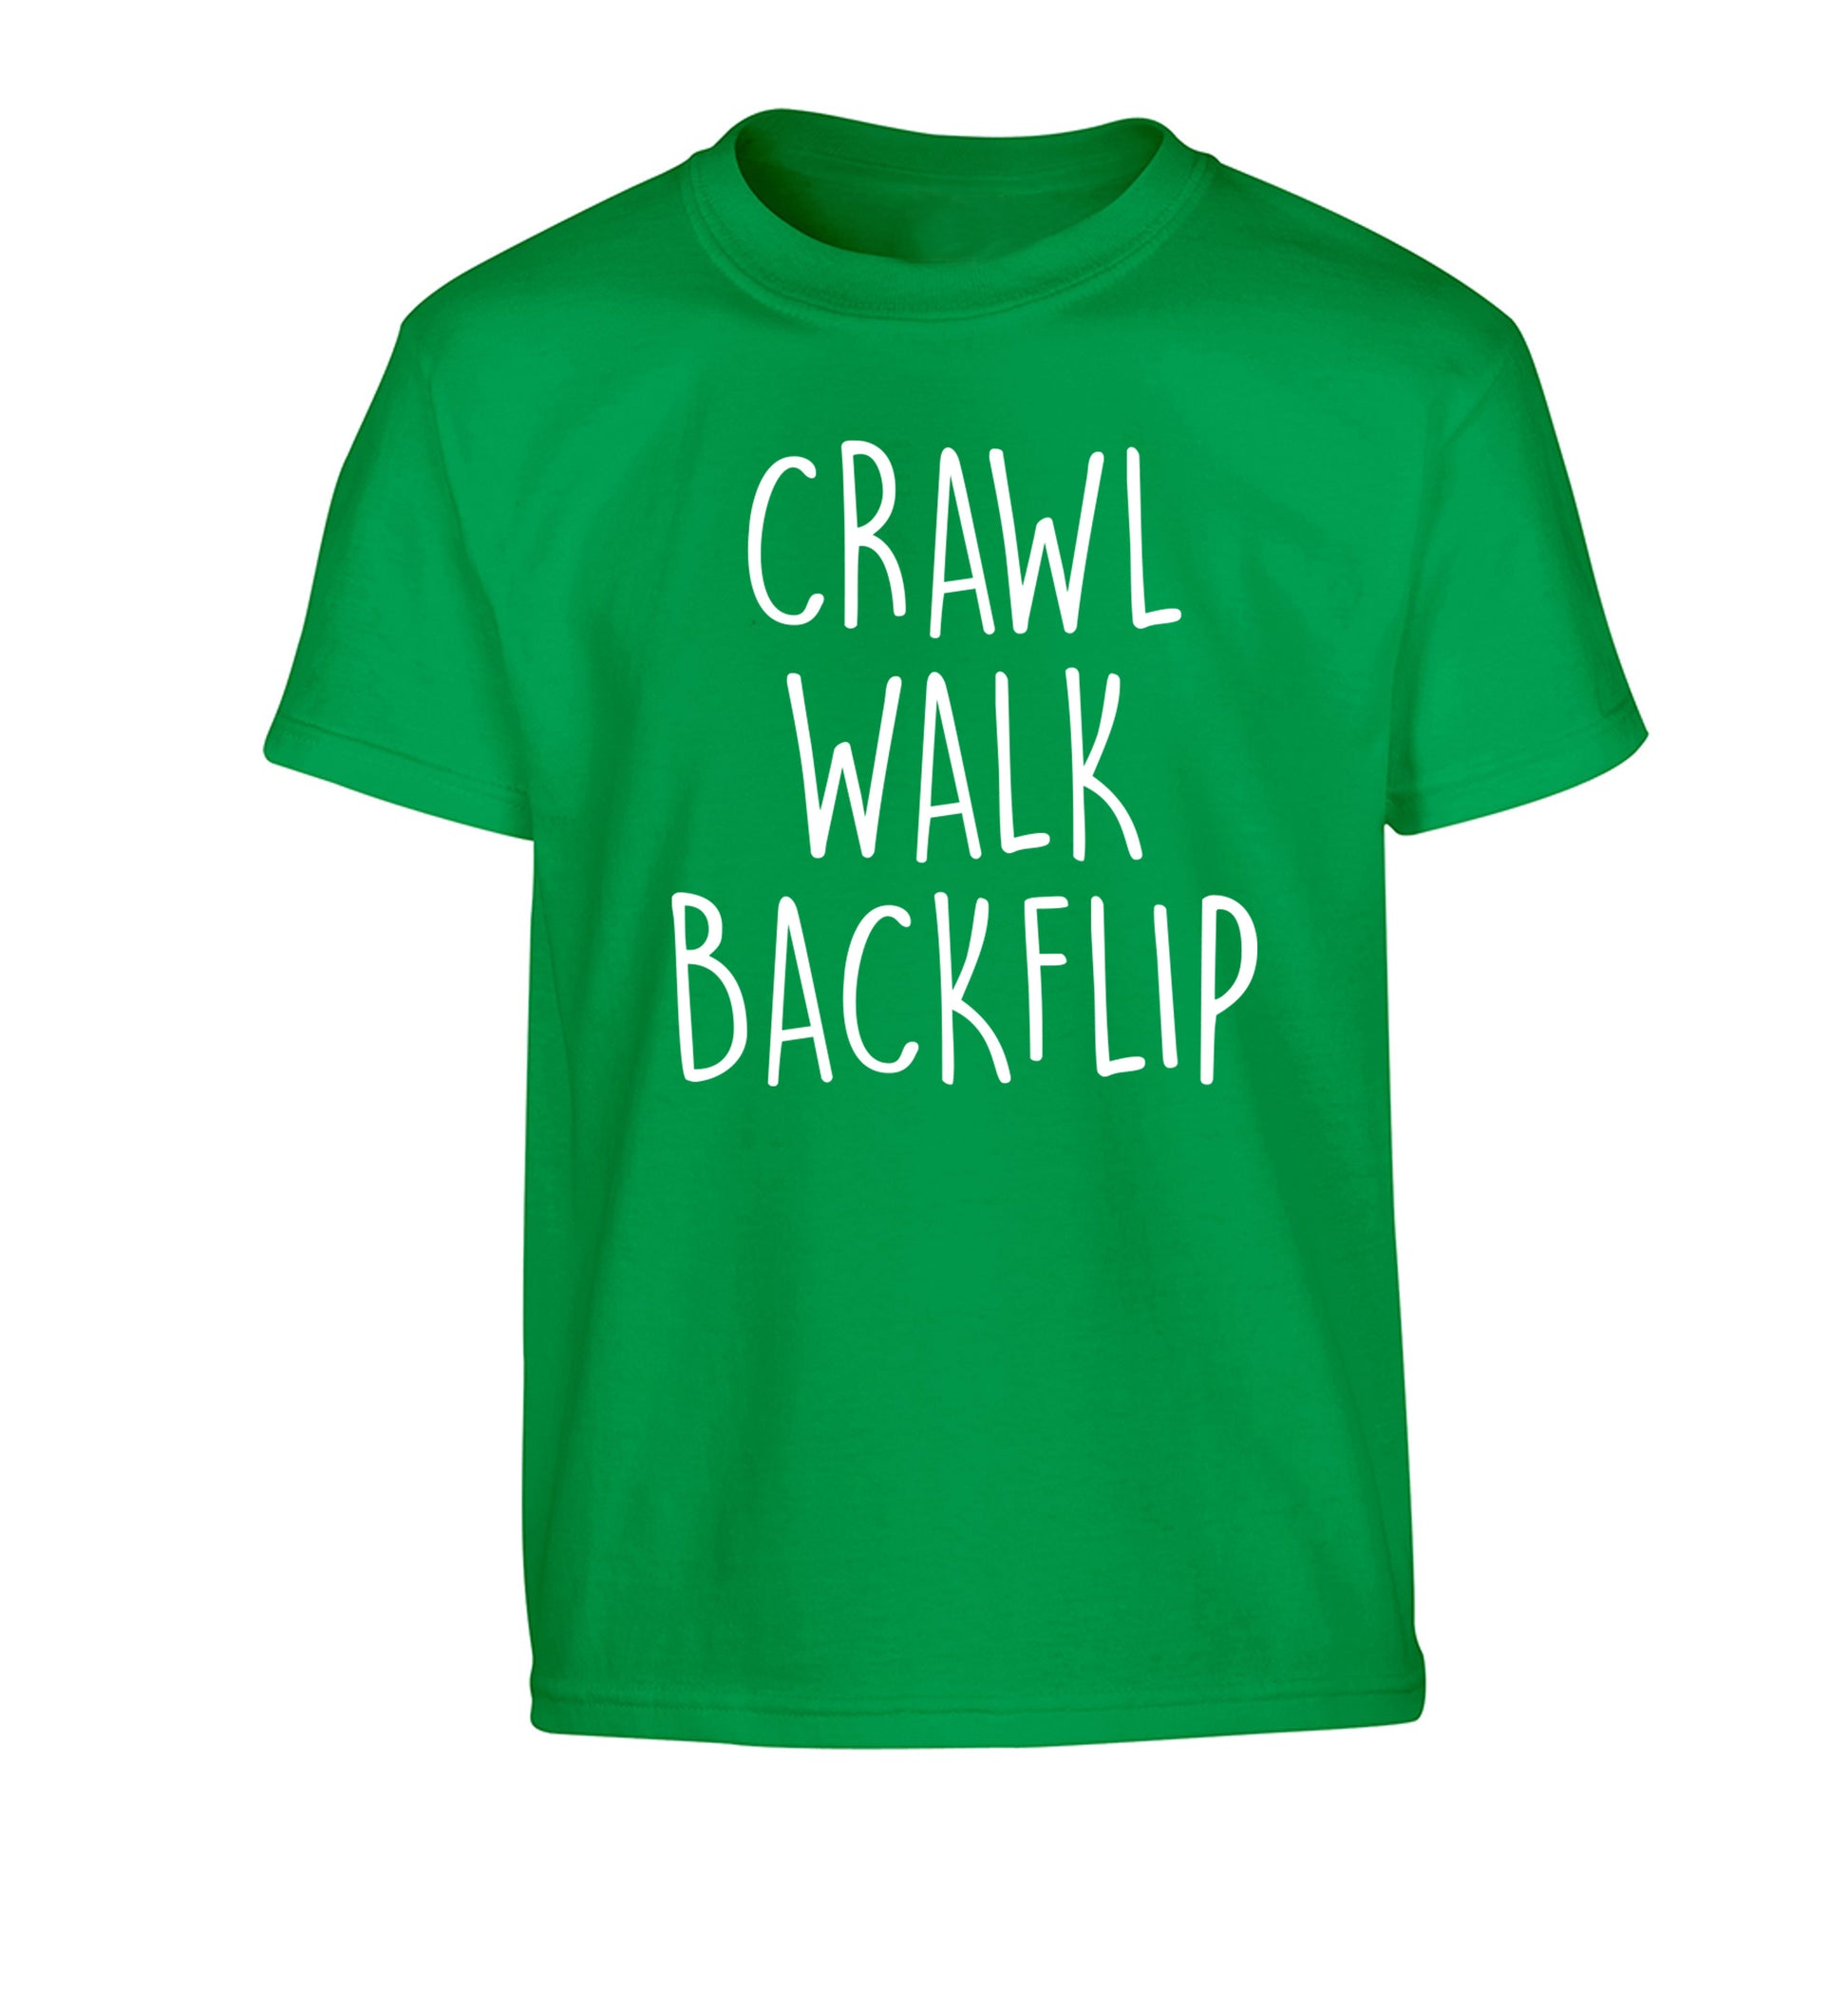 Crawl Walk Backflip Children's green Tshirt 12-13 Years